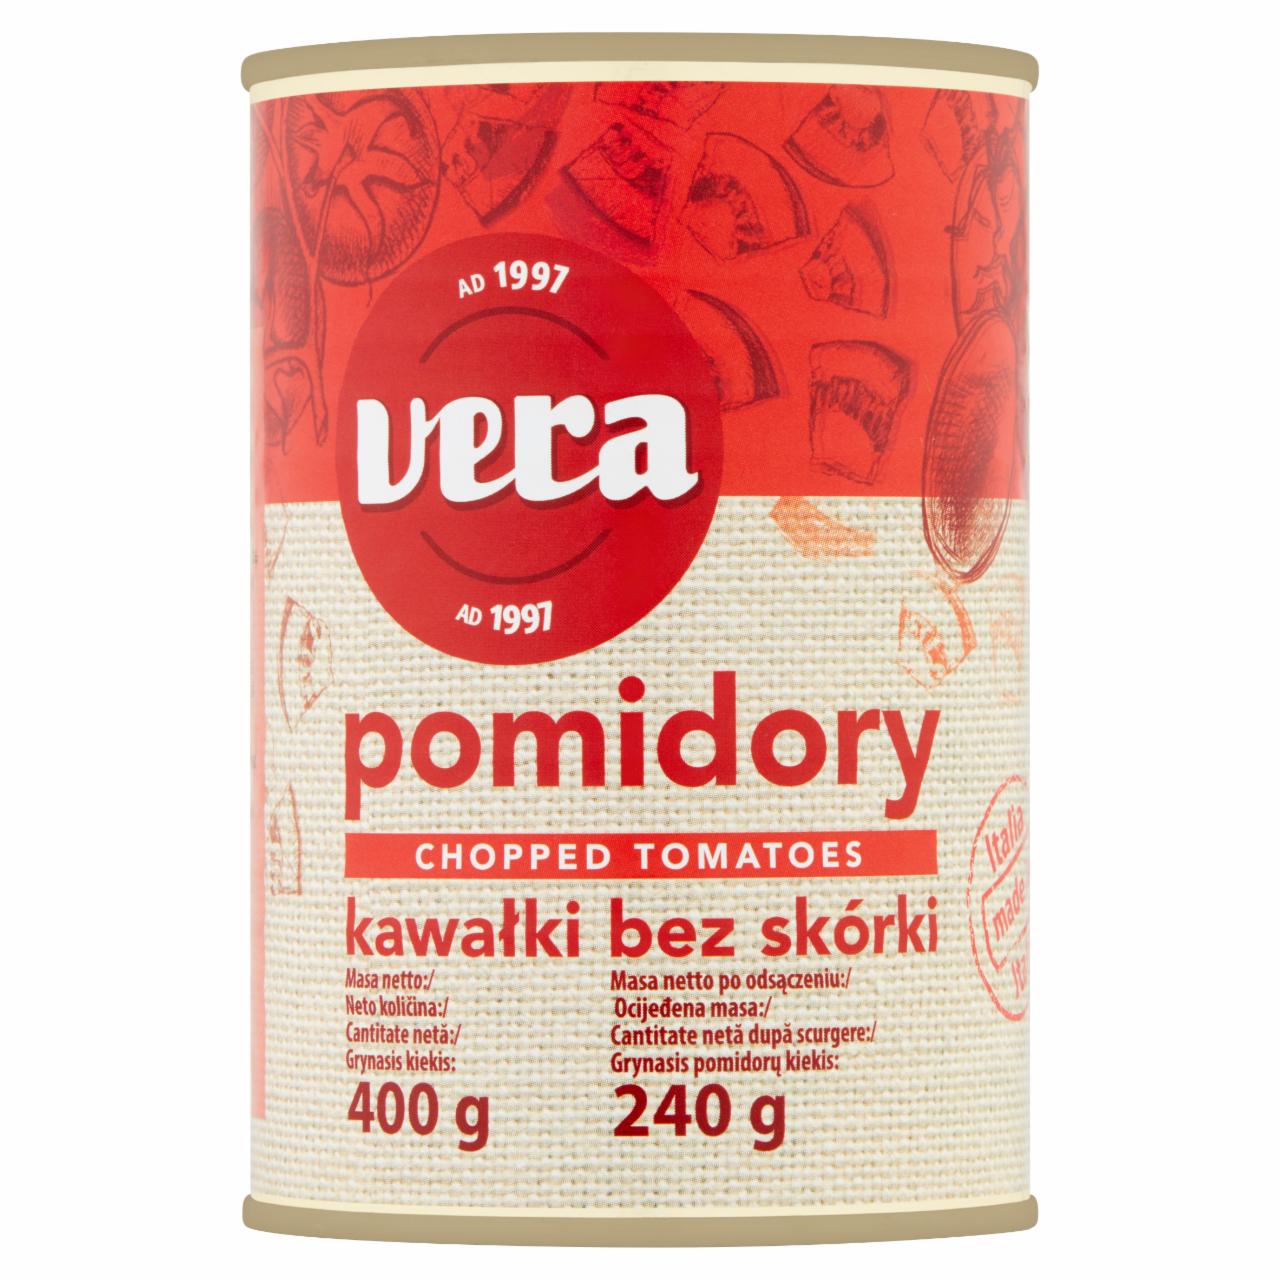 Zdjęcia - Vera Pomidory kawałki bez skórki 400 g